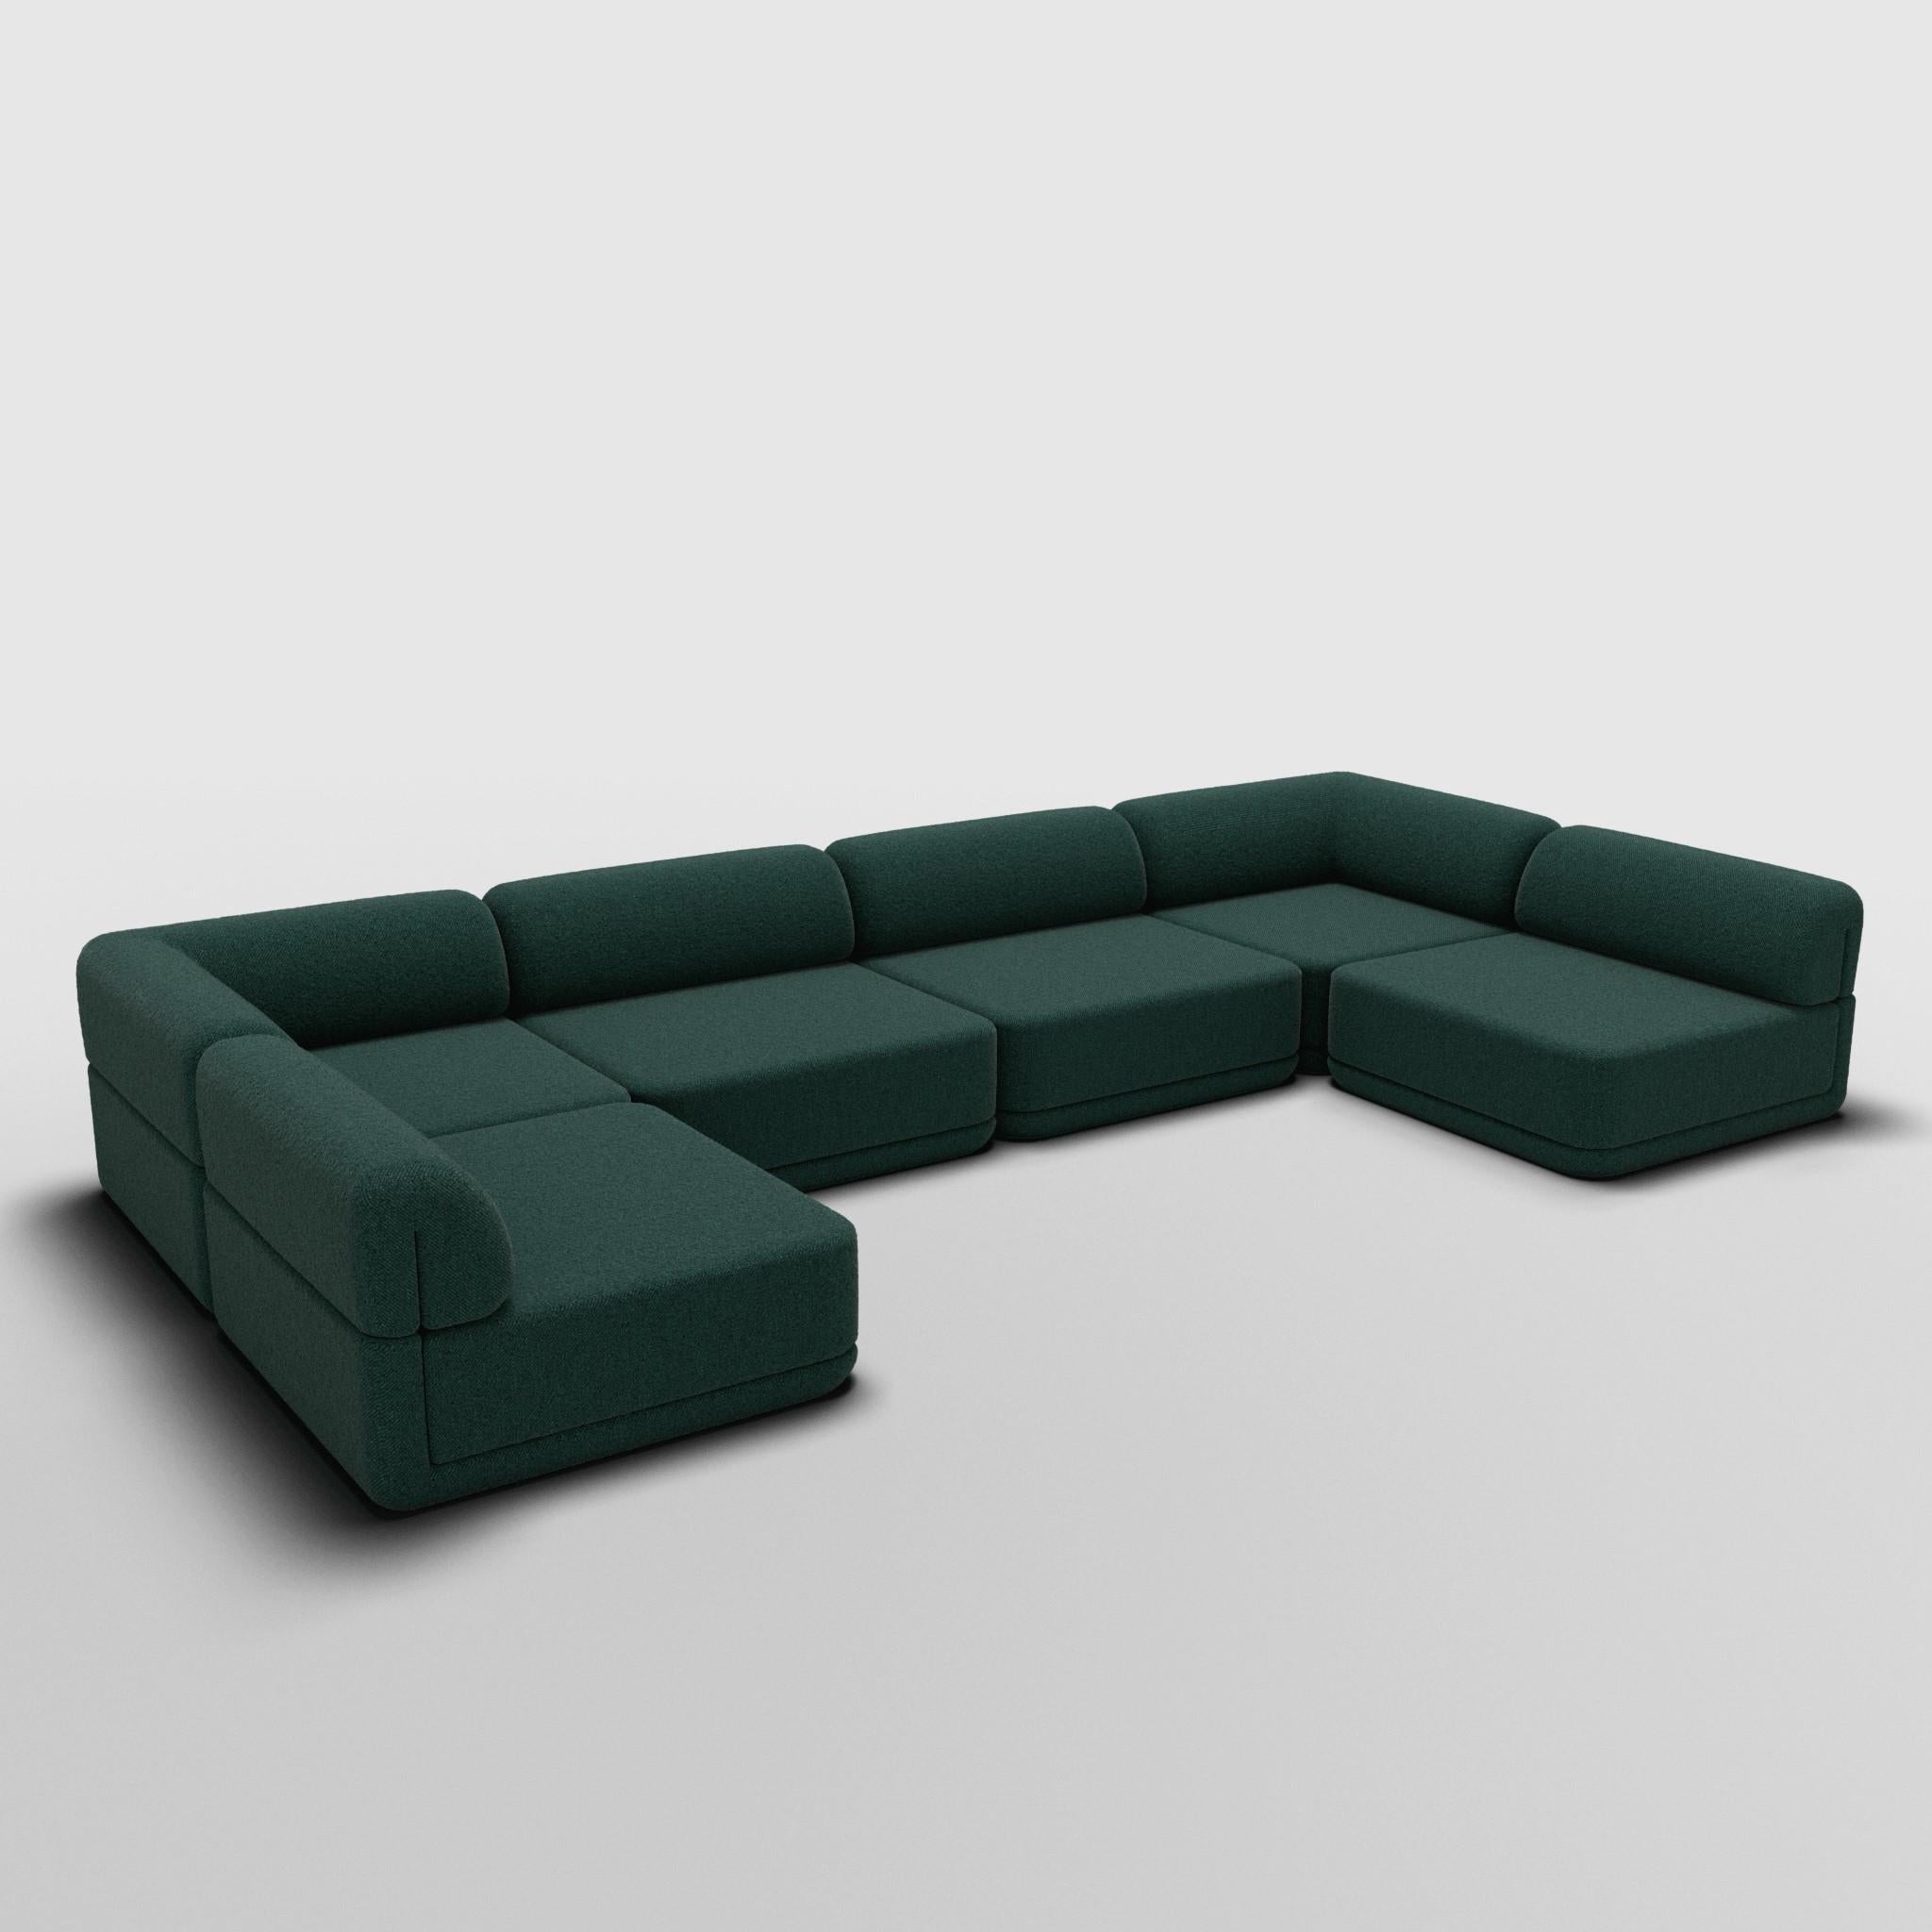 Sectionnel en U - Inspiré par les meubles de luxe italiens des années 70

Découvrez le canapé Cube, où l'art rencontre l'adaptabilité. Son design sculptural et son confort personnalisable créent des possibilités infinies pour votre espace de vie.